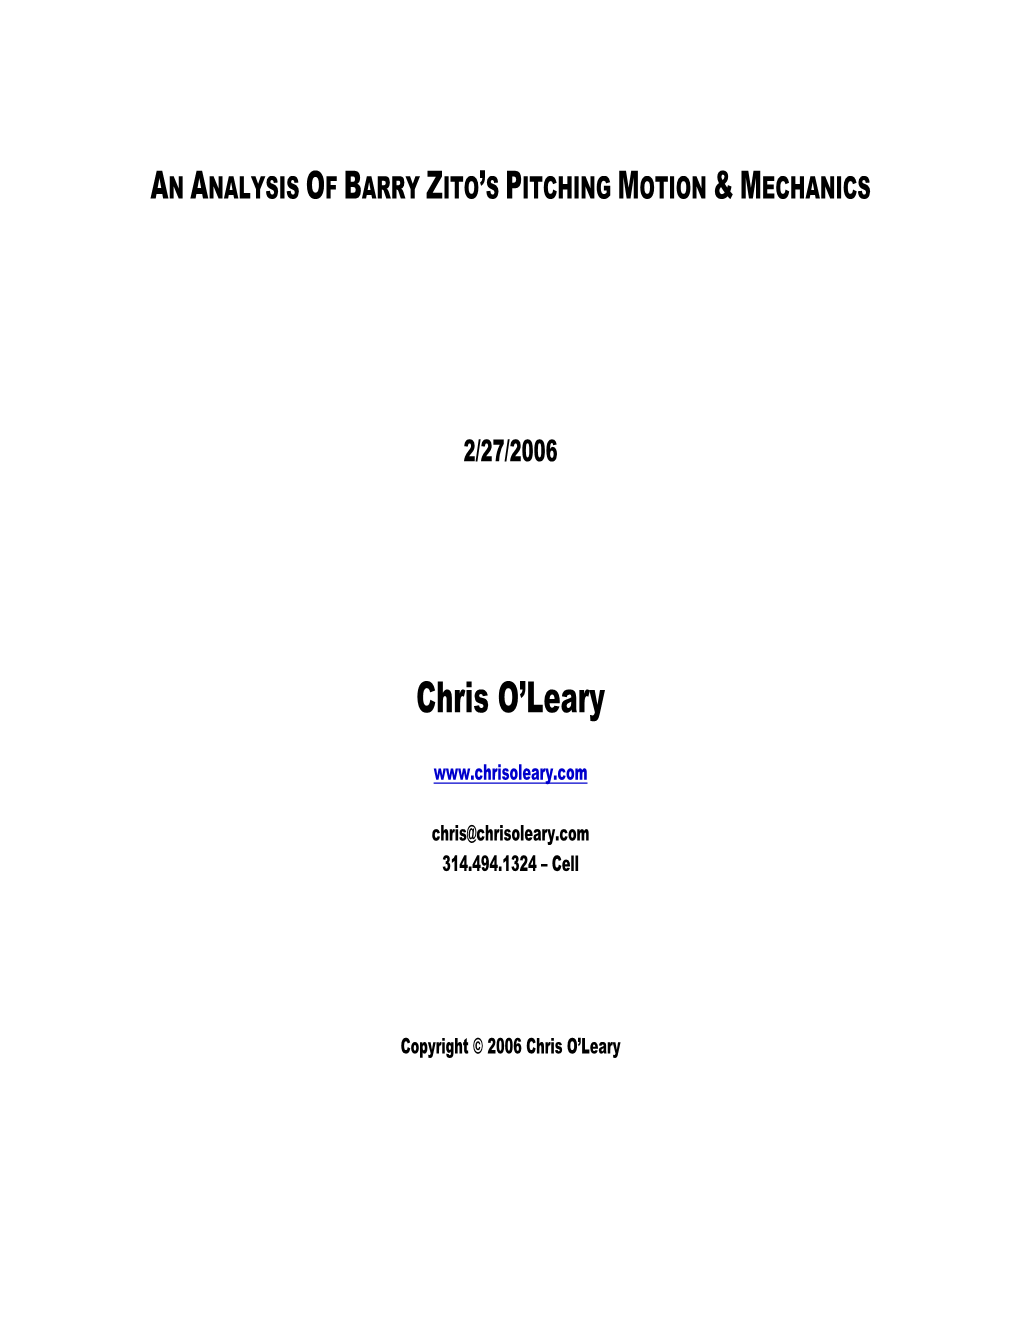 Barry Zito’S Pitching Motion & Mechanics